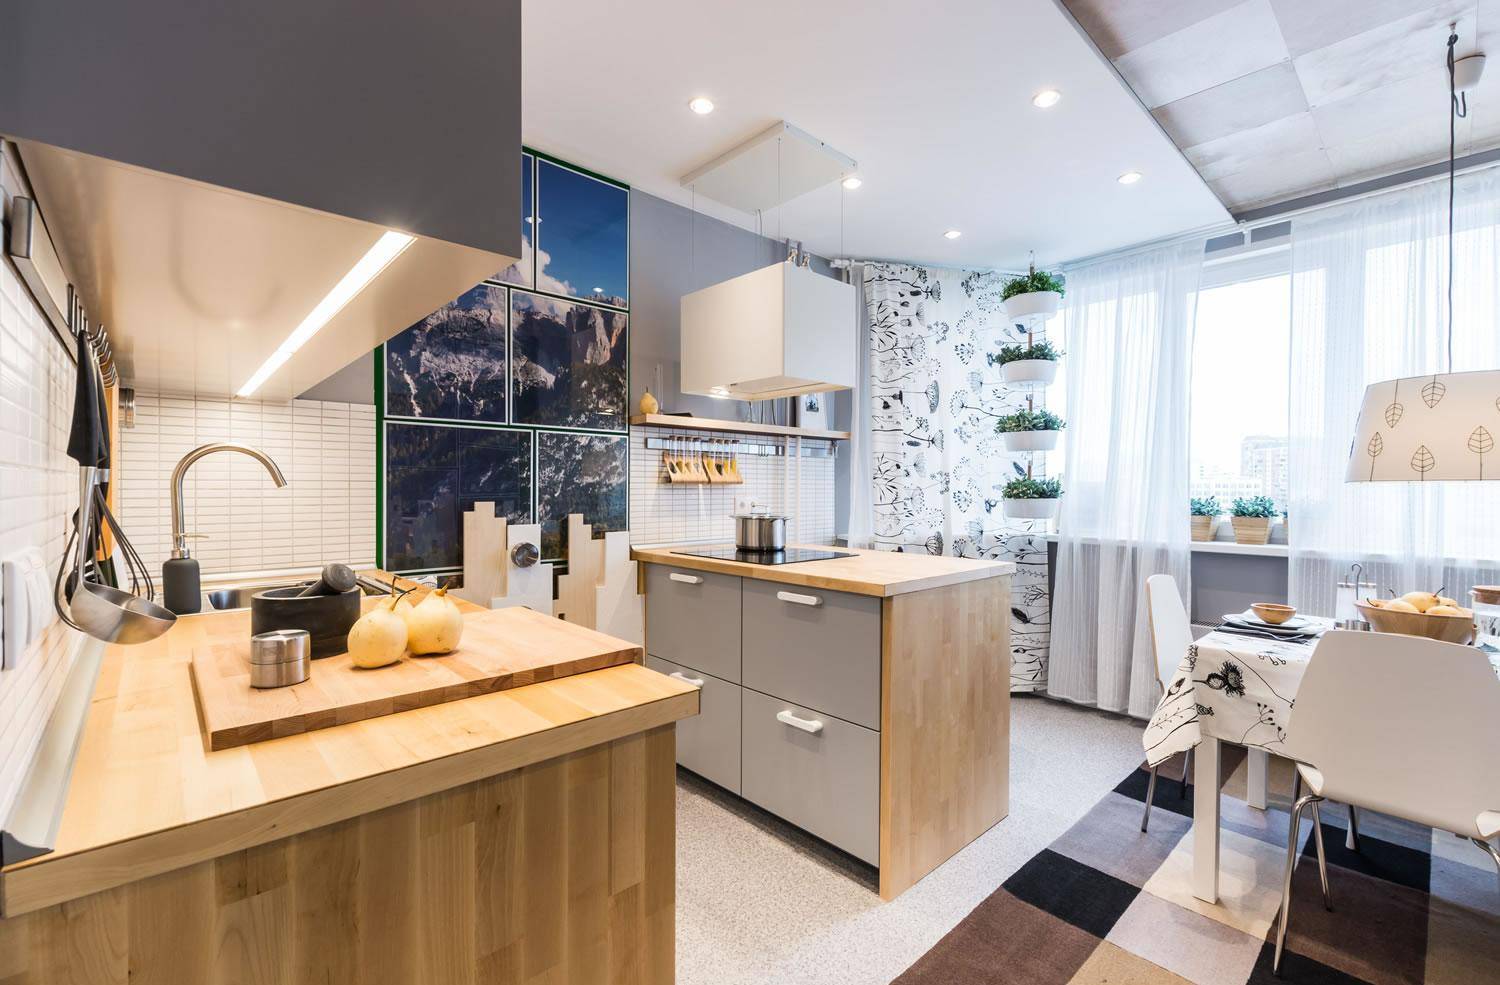 Кухня 14 кв. м. (150 фото) - обзор лучших идей планировки, дизайна и зонирования в кухне